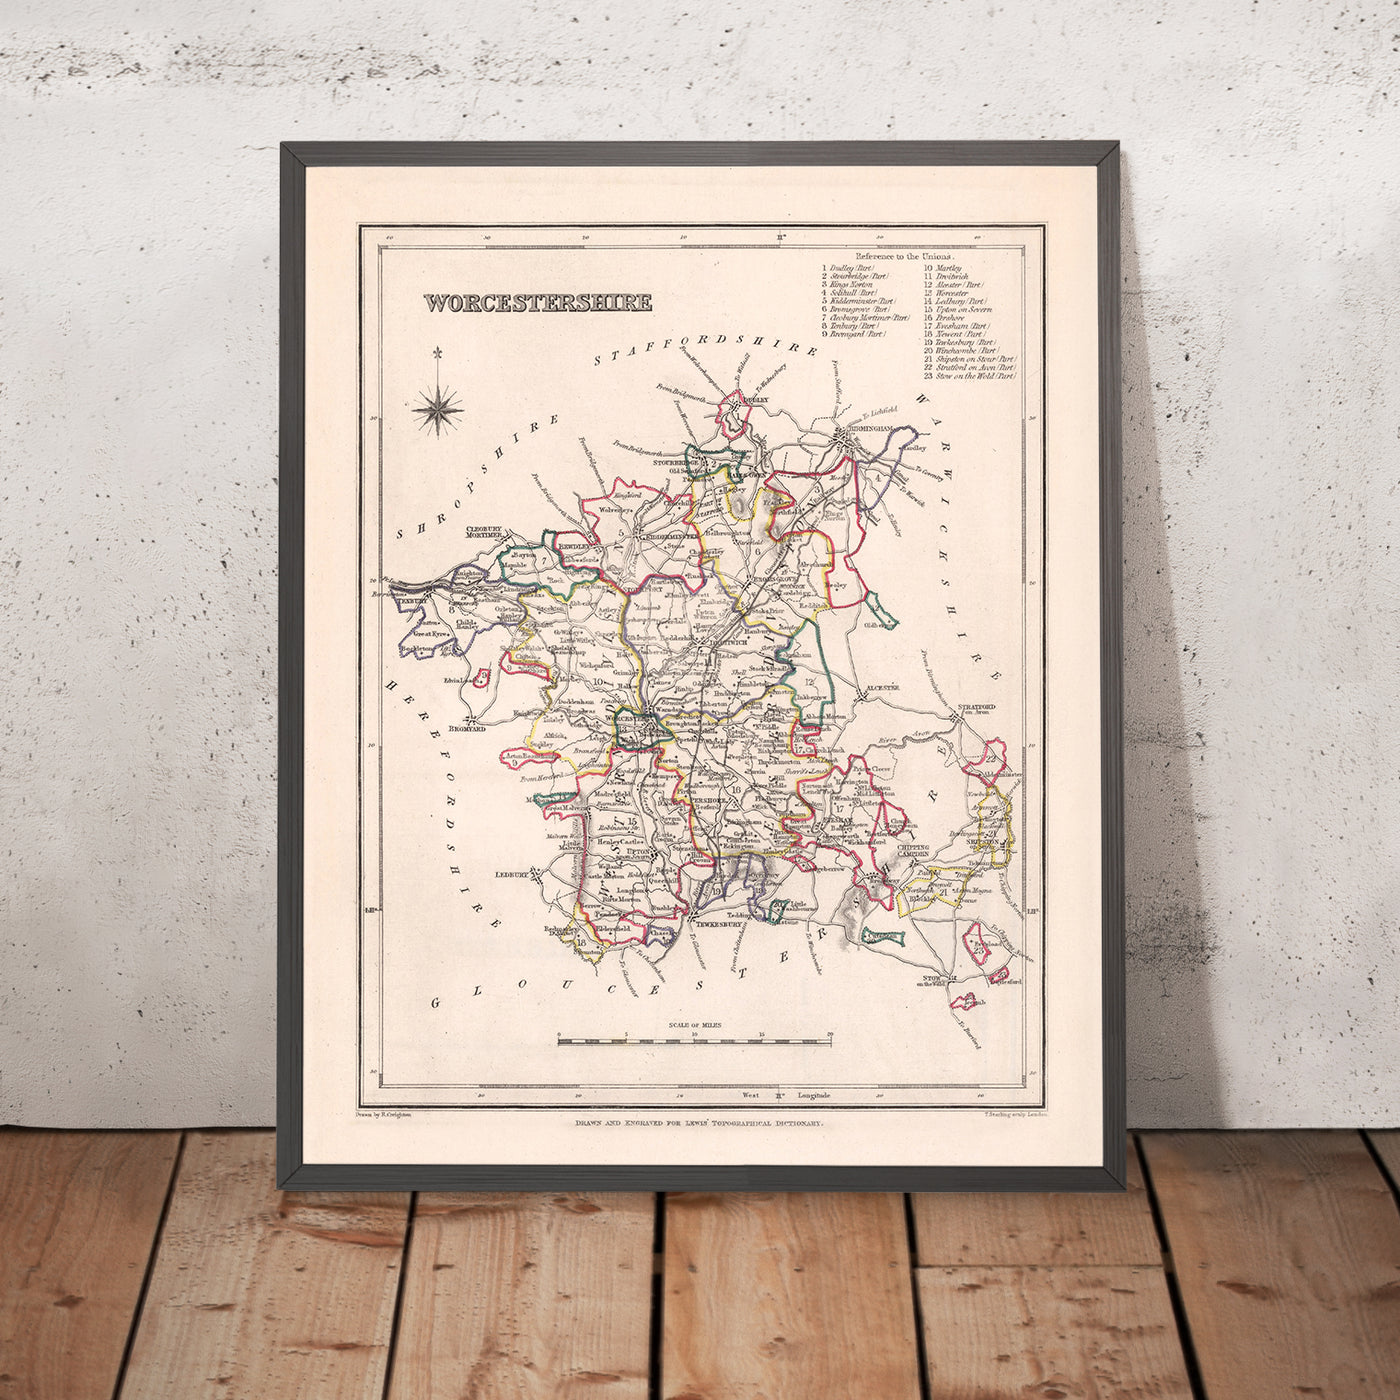 Mapa antiguo de Worcestershire por Samuel Lewis, 1844: Worcester, Kidderminster, Malvern, Evesham, Broadway